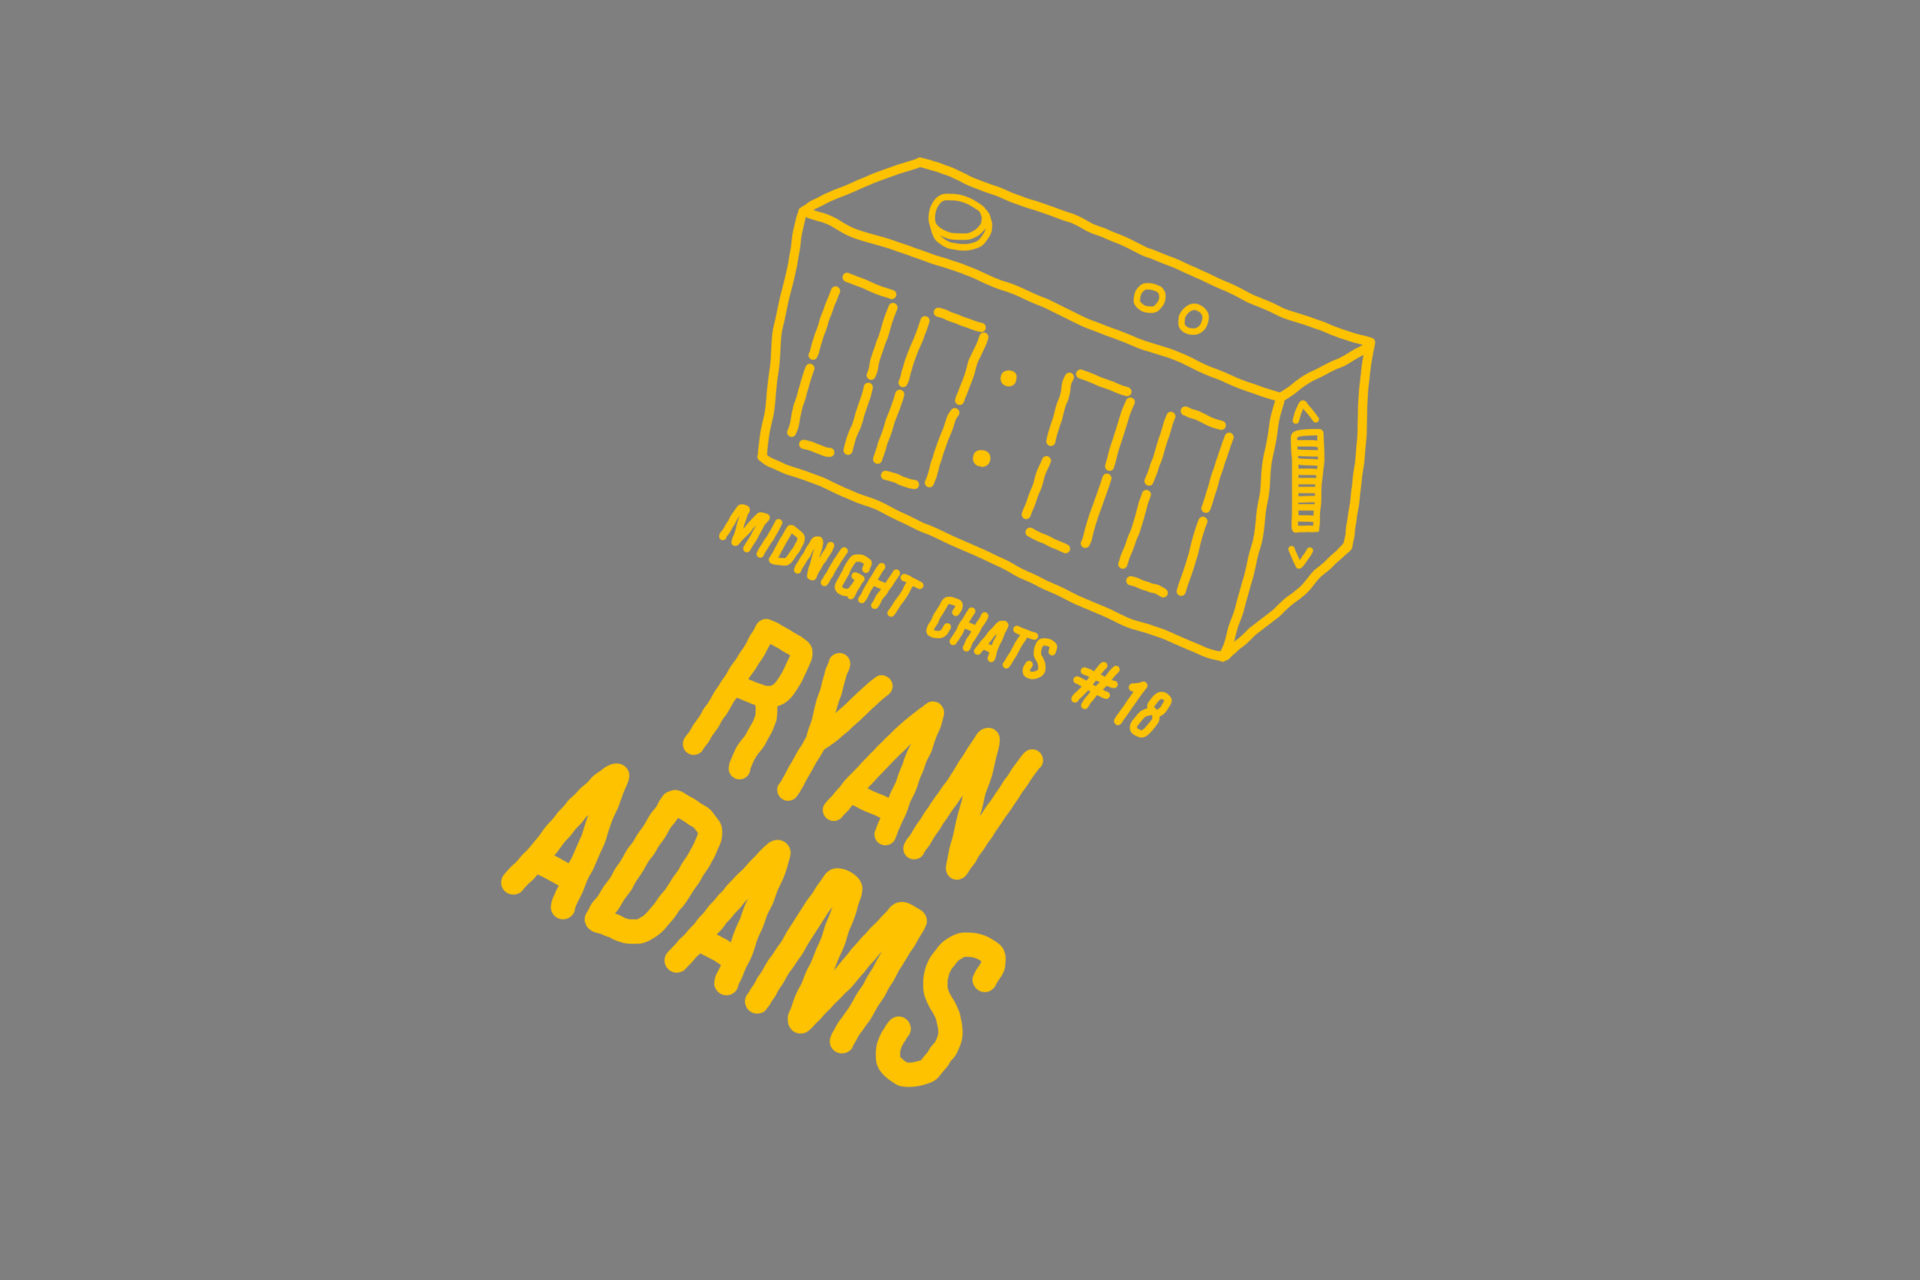 ryan adams midnight wave radio link